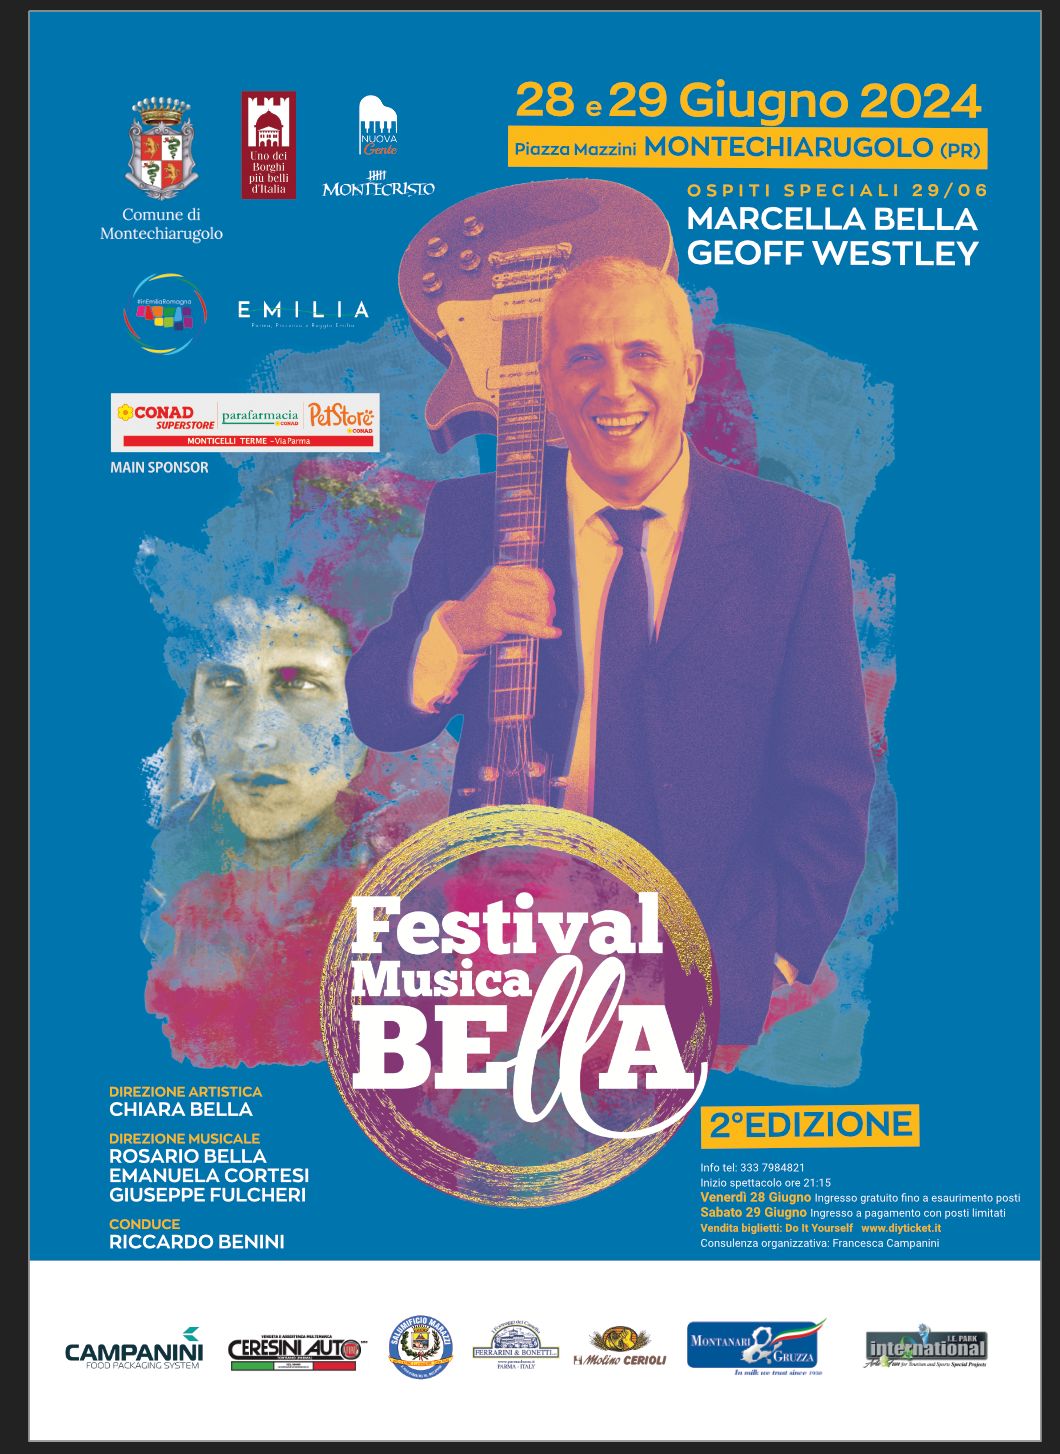 Festival Musica Bella il 28 e 29 giugno in Piazza Mazzini a Montechiarugolo